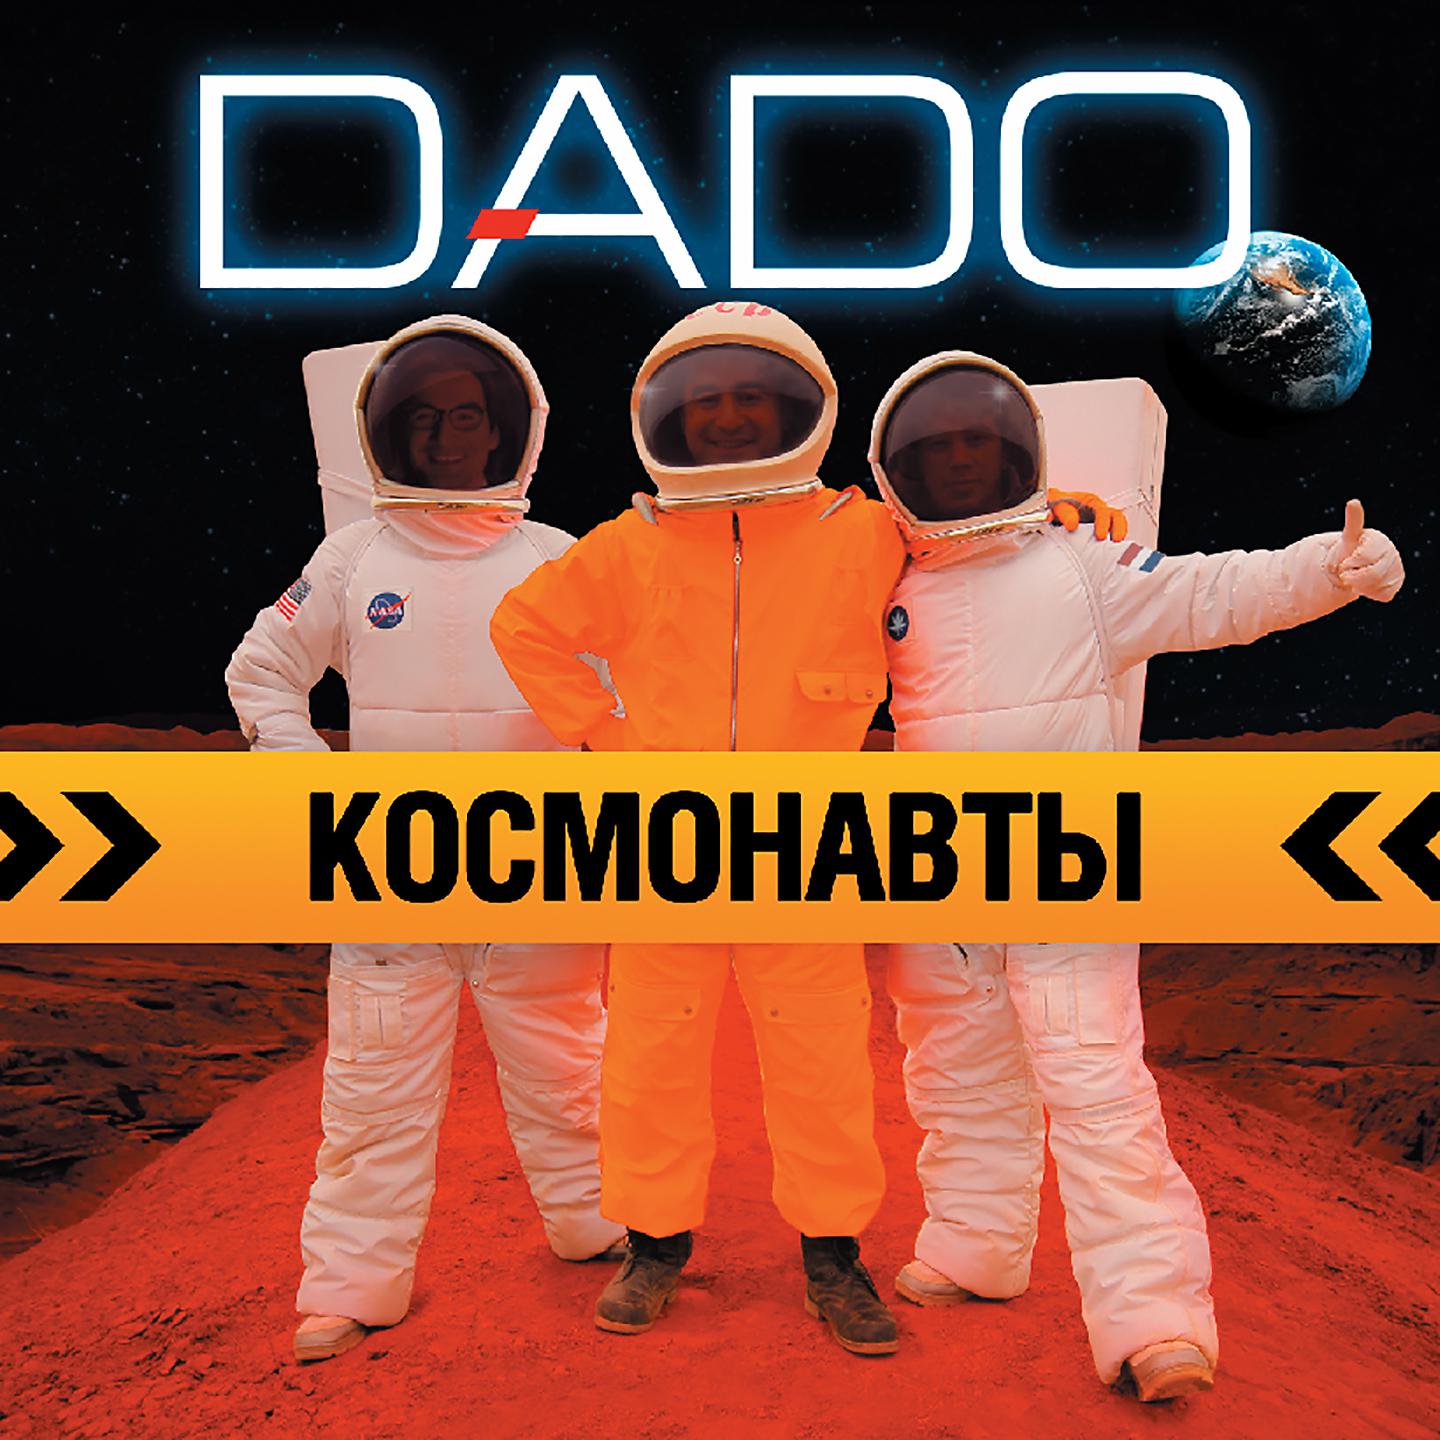 Улетели теплые дни. Dado космонавты. Альбом с космонавтом. Дадо. Группа Дадо.